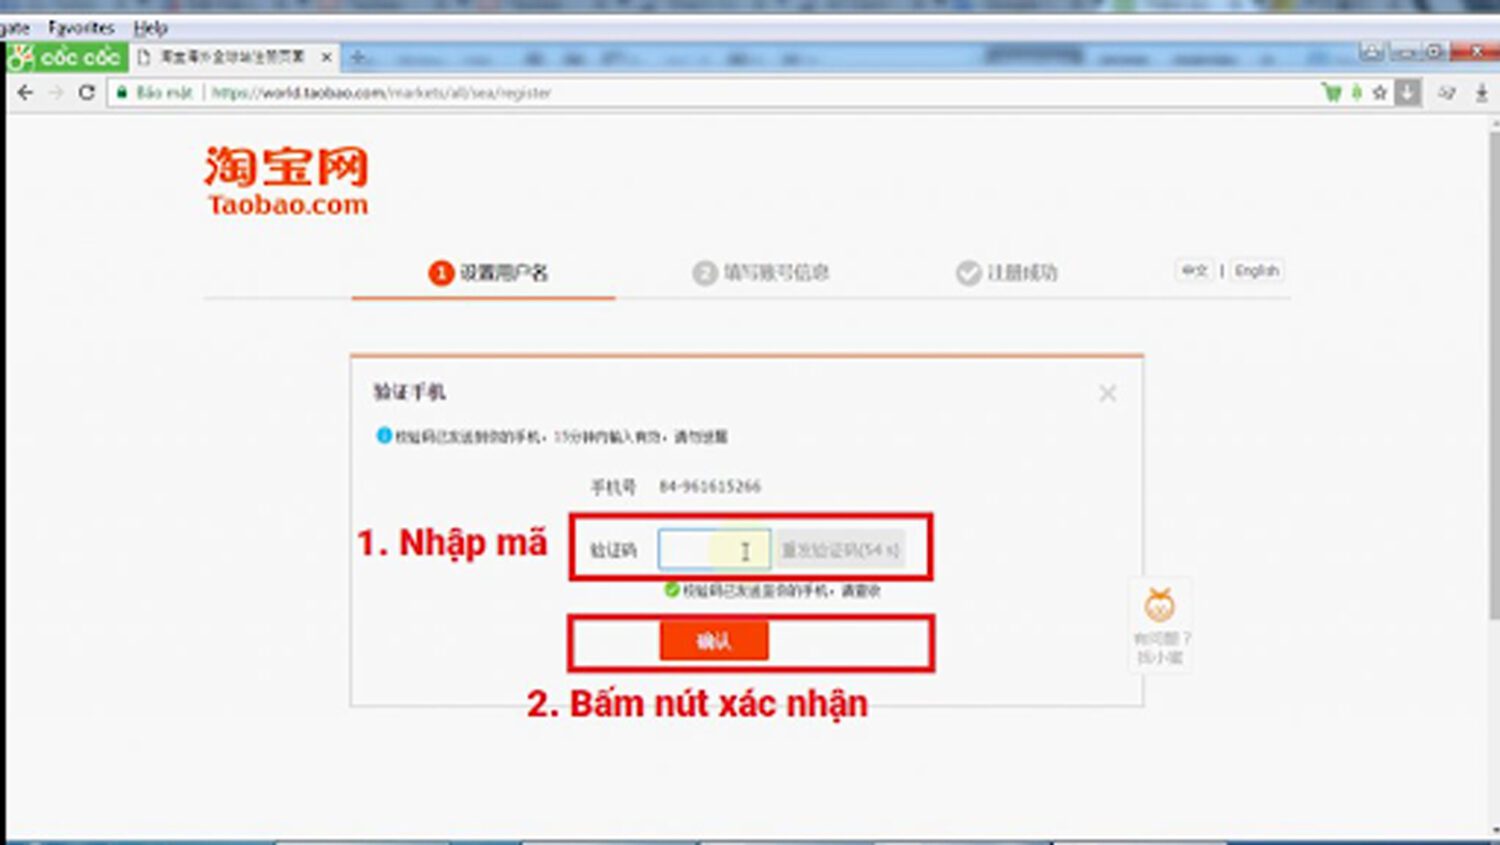 Xác nhận thông tin liên hệ để tạo tài khoản Taobao